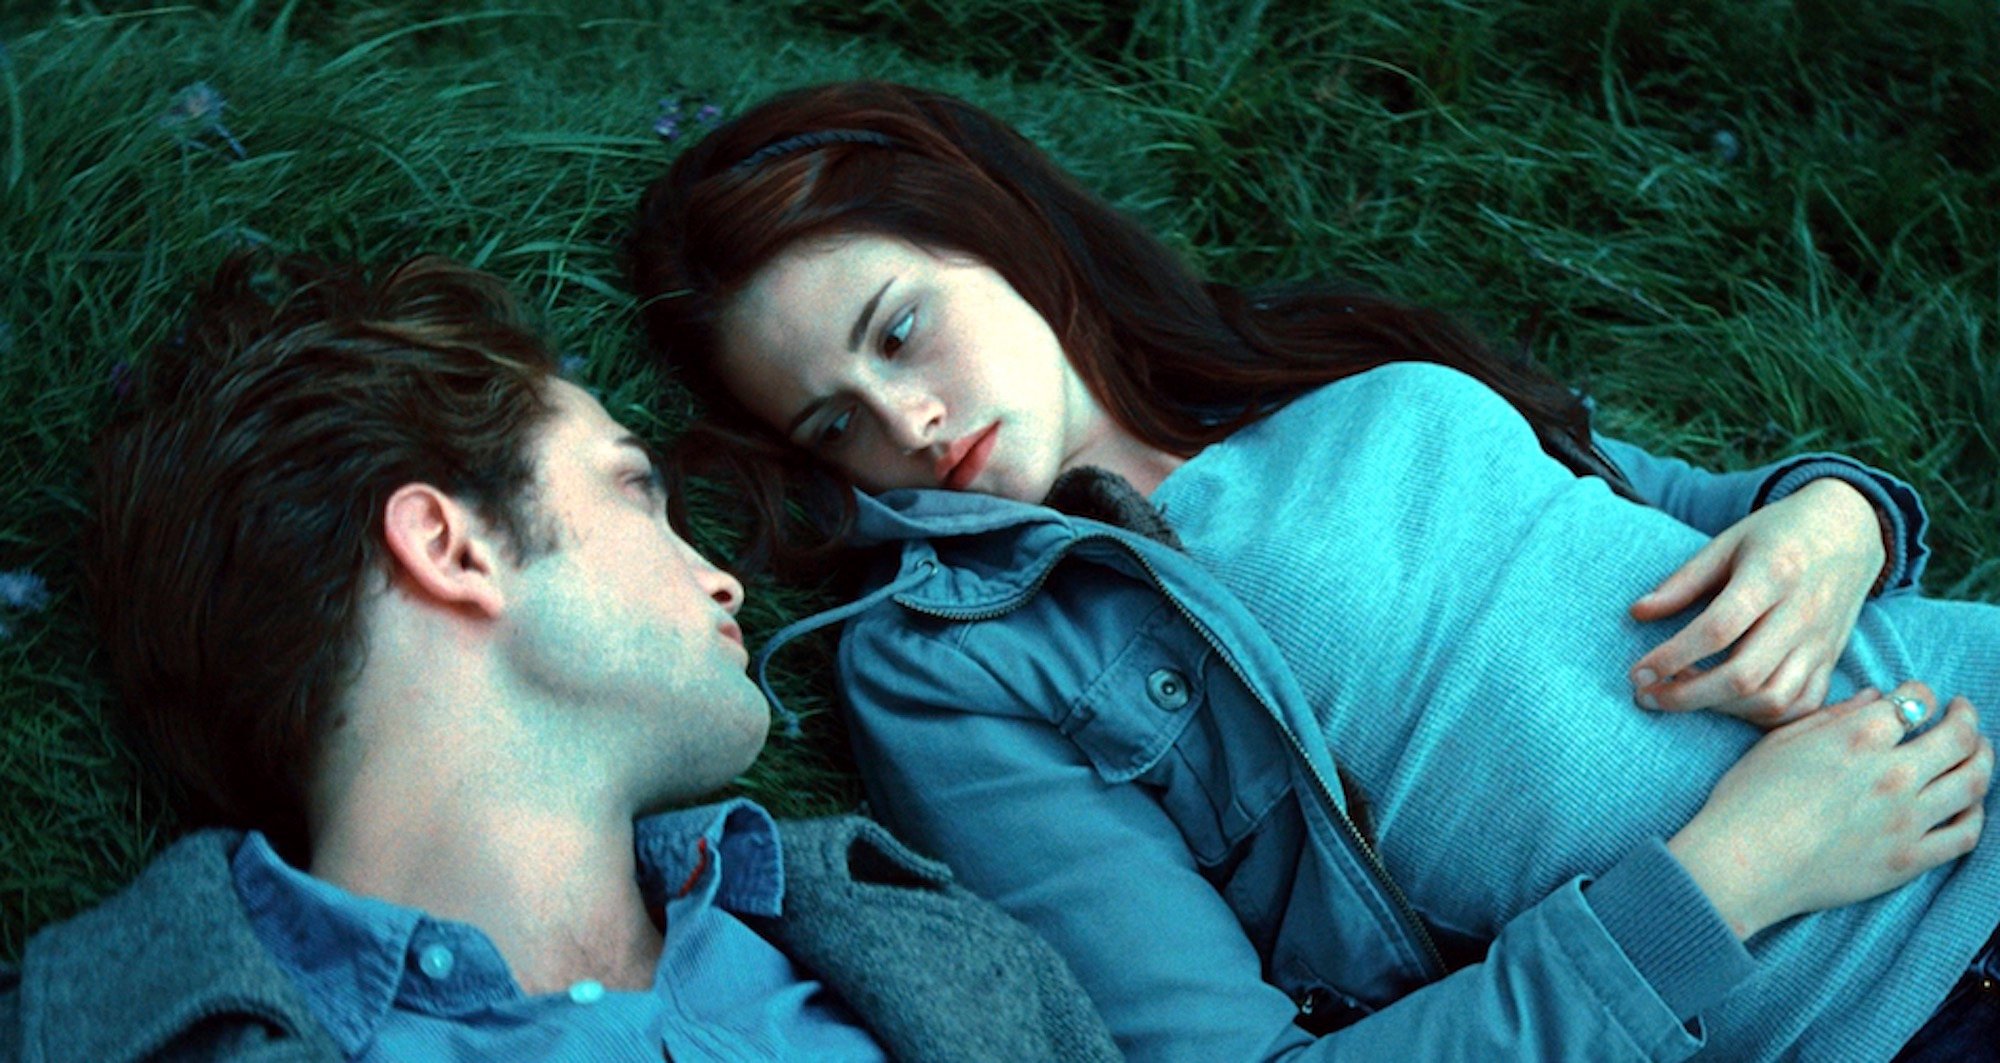 Edward Cullen (Robert Pattinson) and Bella Swan (Kristen Stewart) in the 'Twilight' meadow scene